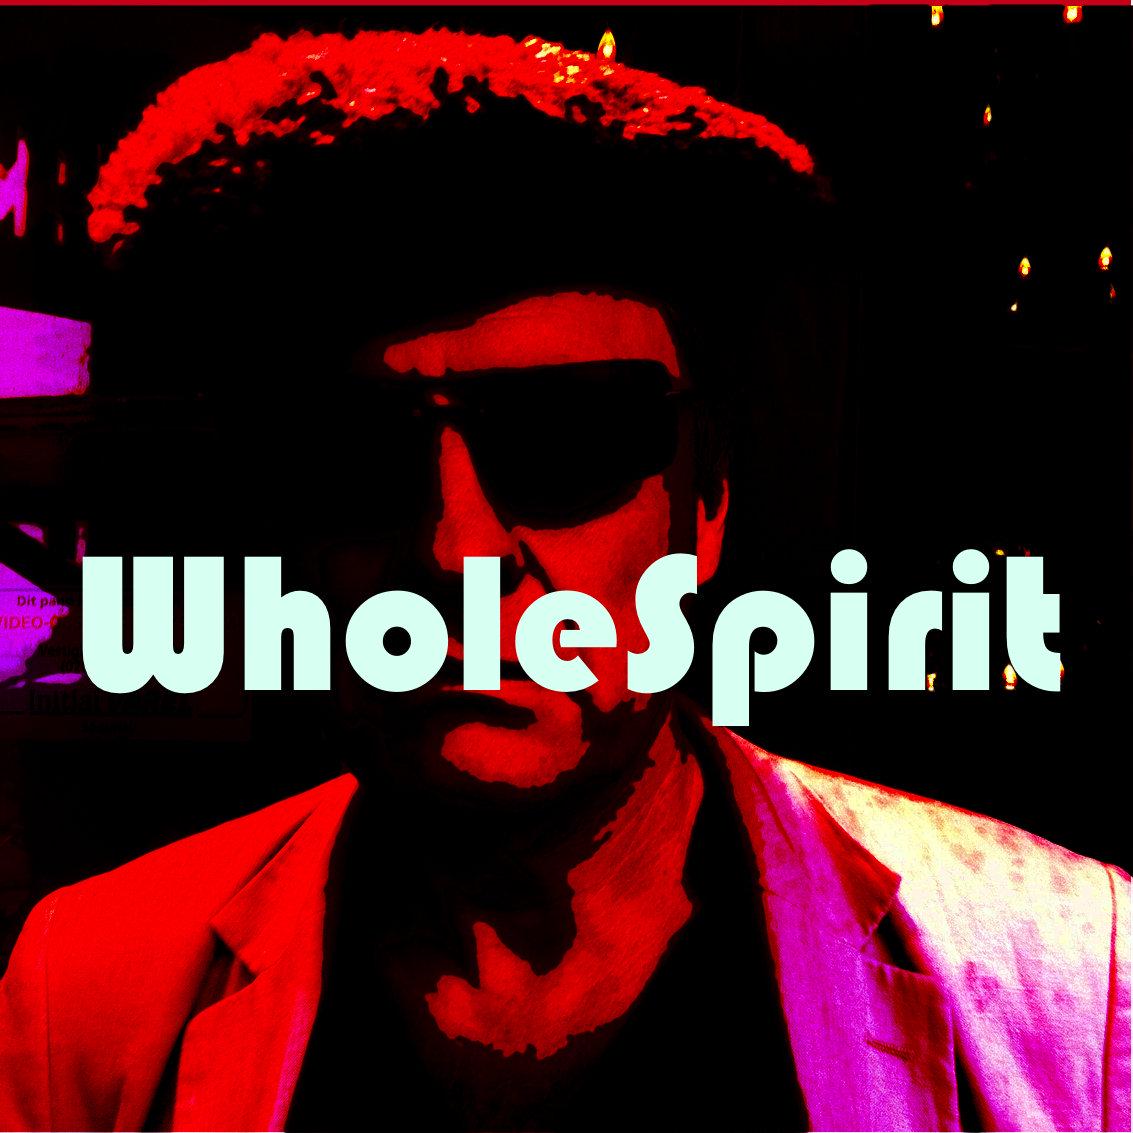 WholeSpirit